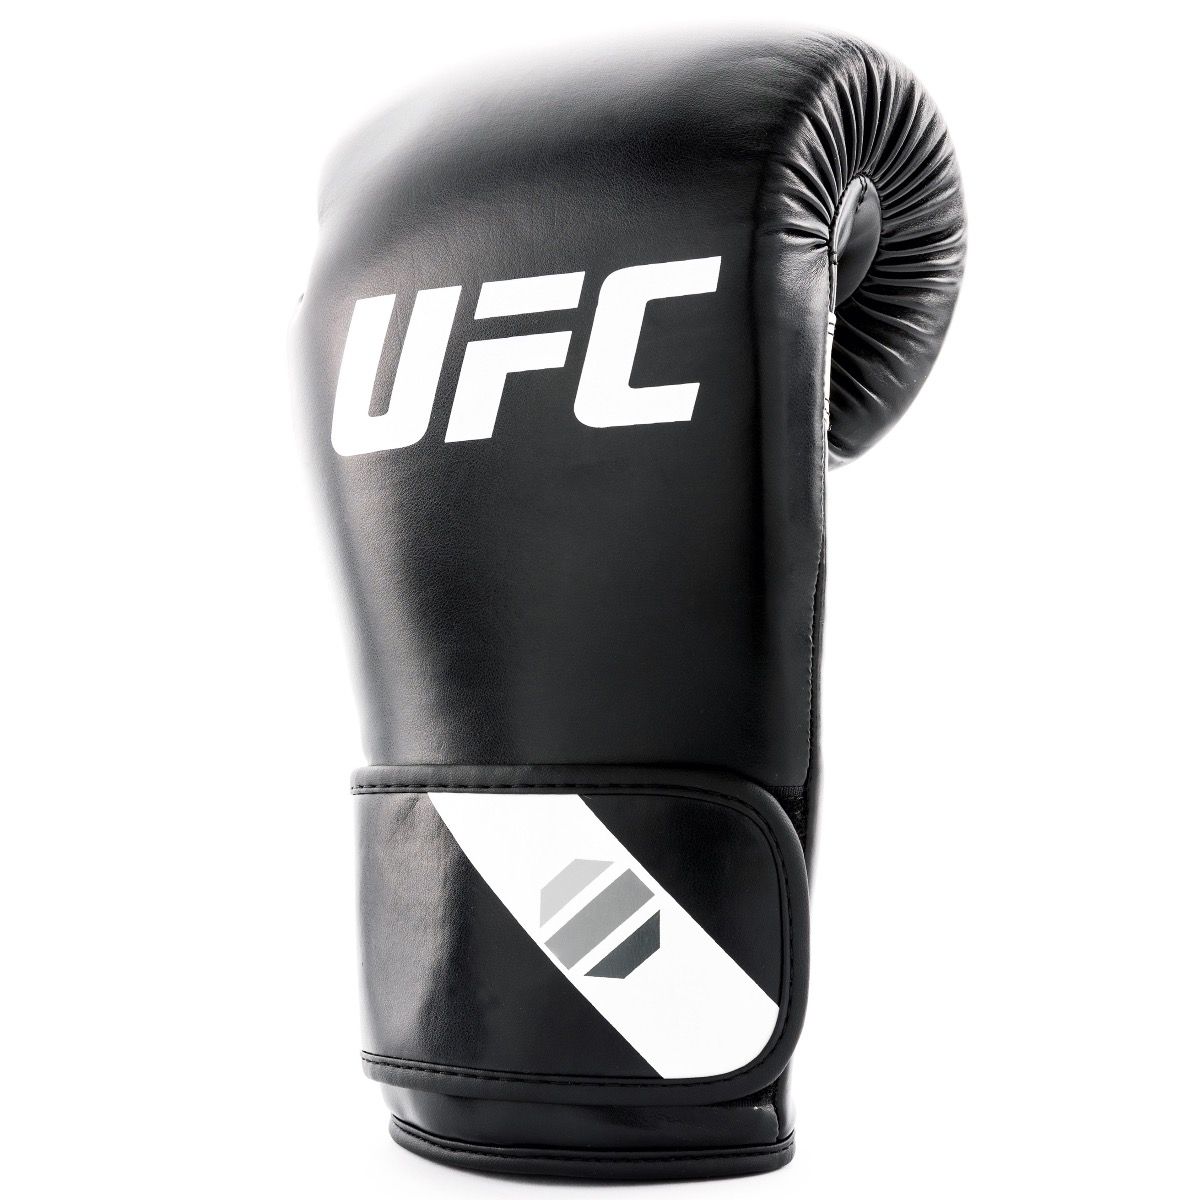 UFC Fitness Training Glove 6oz, schwarz/weiß/silber